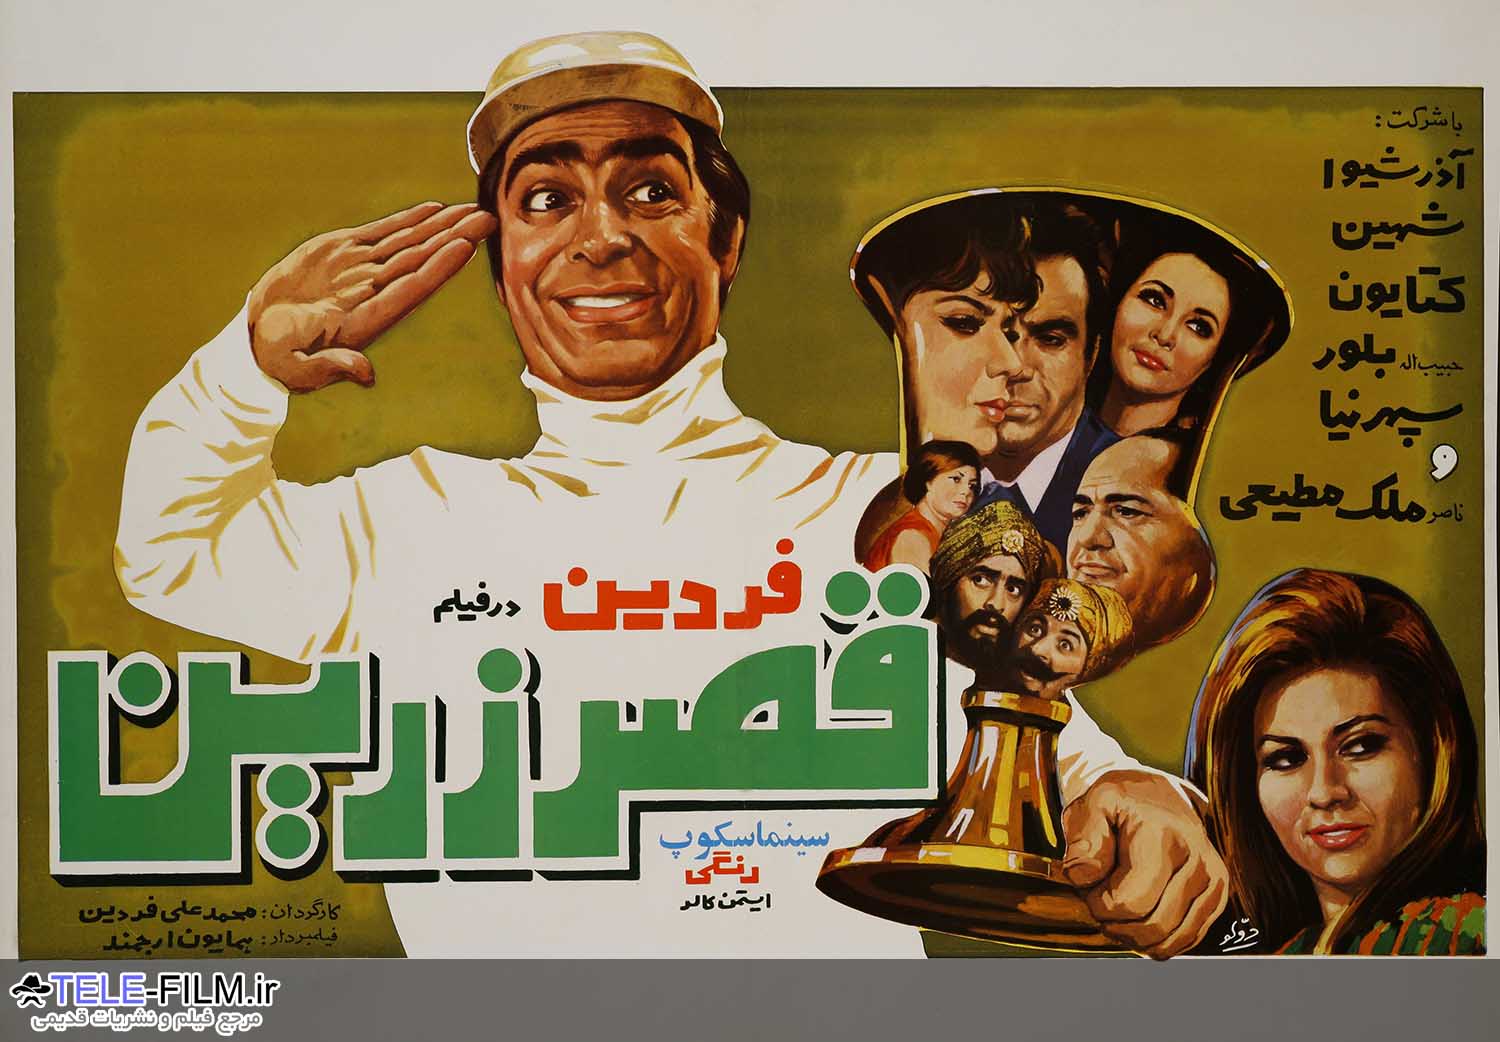 آرشیو پوستر فیلمهای ایرانی قدیمی